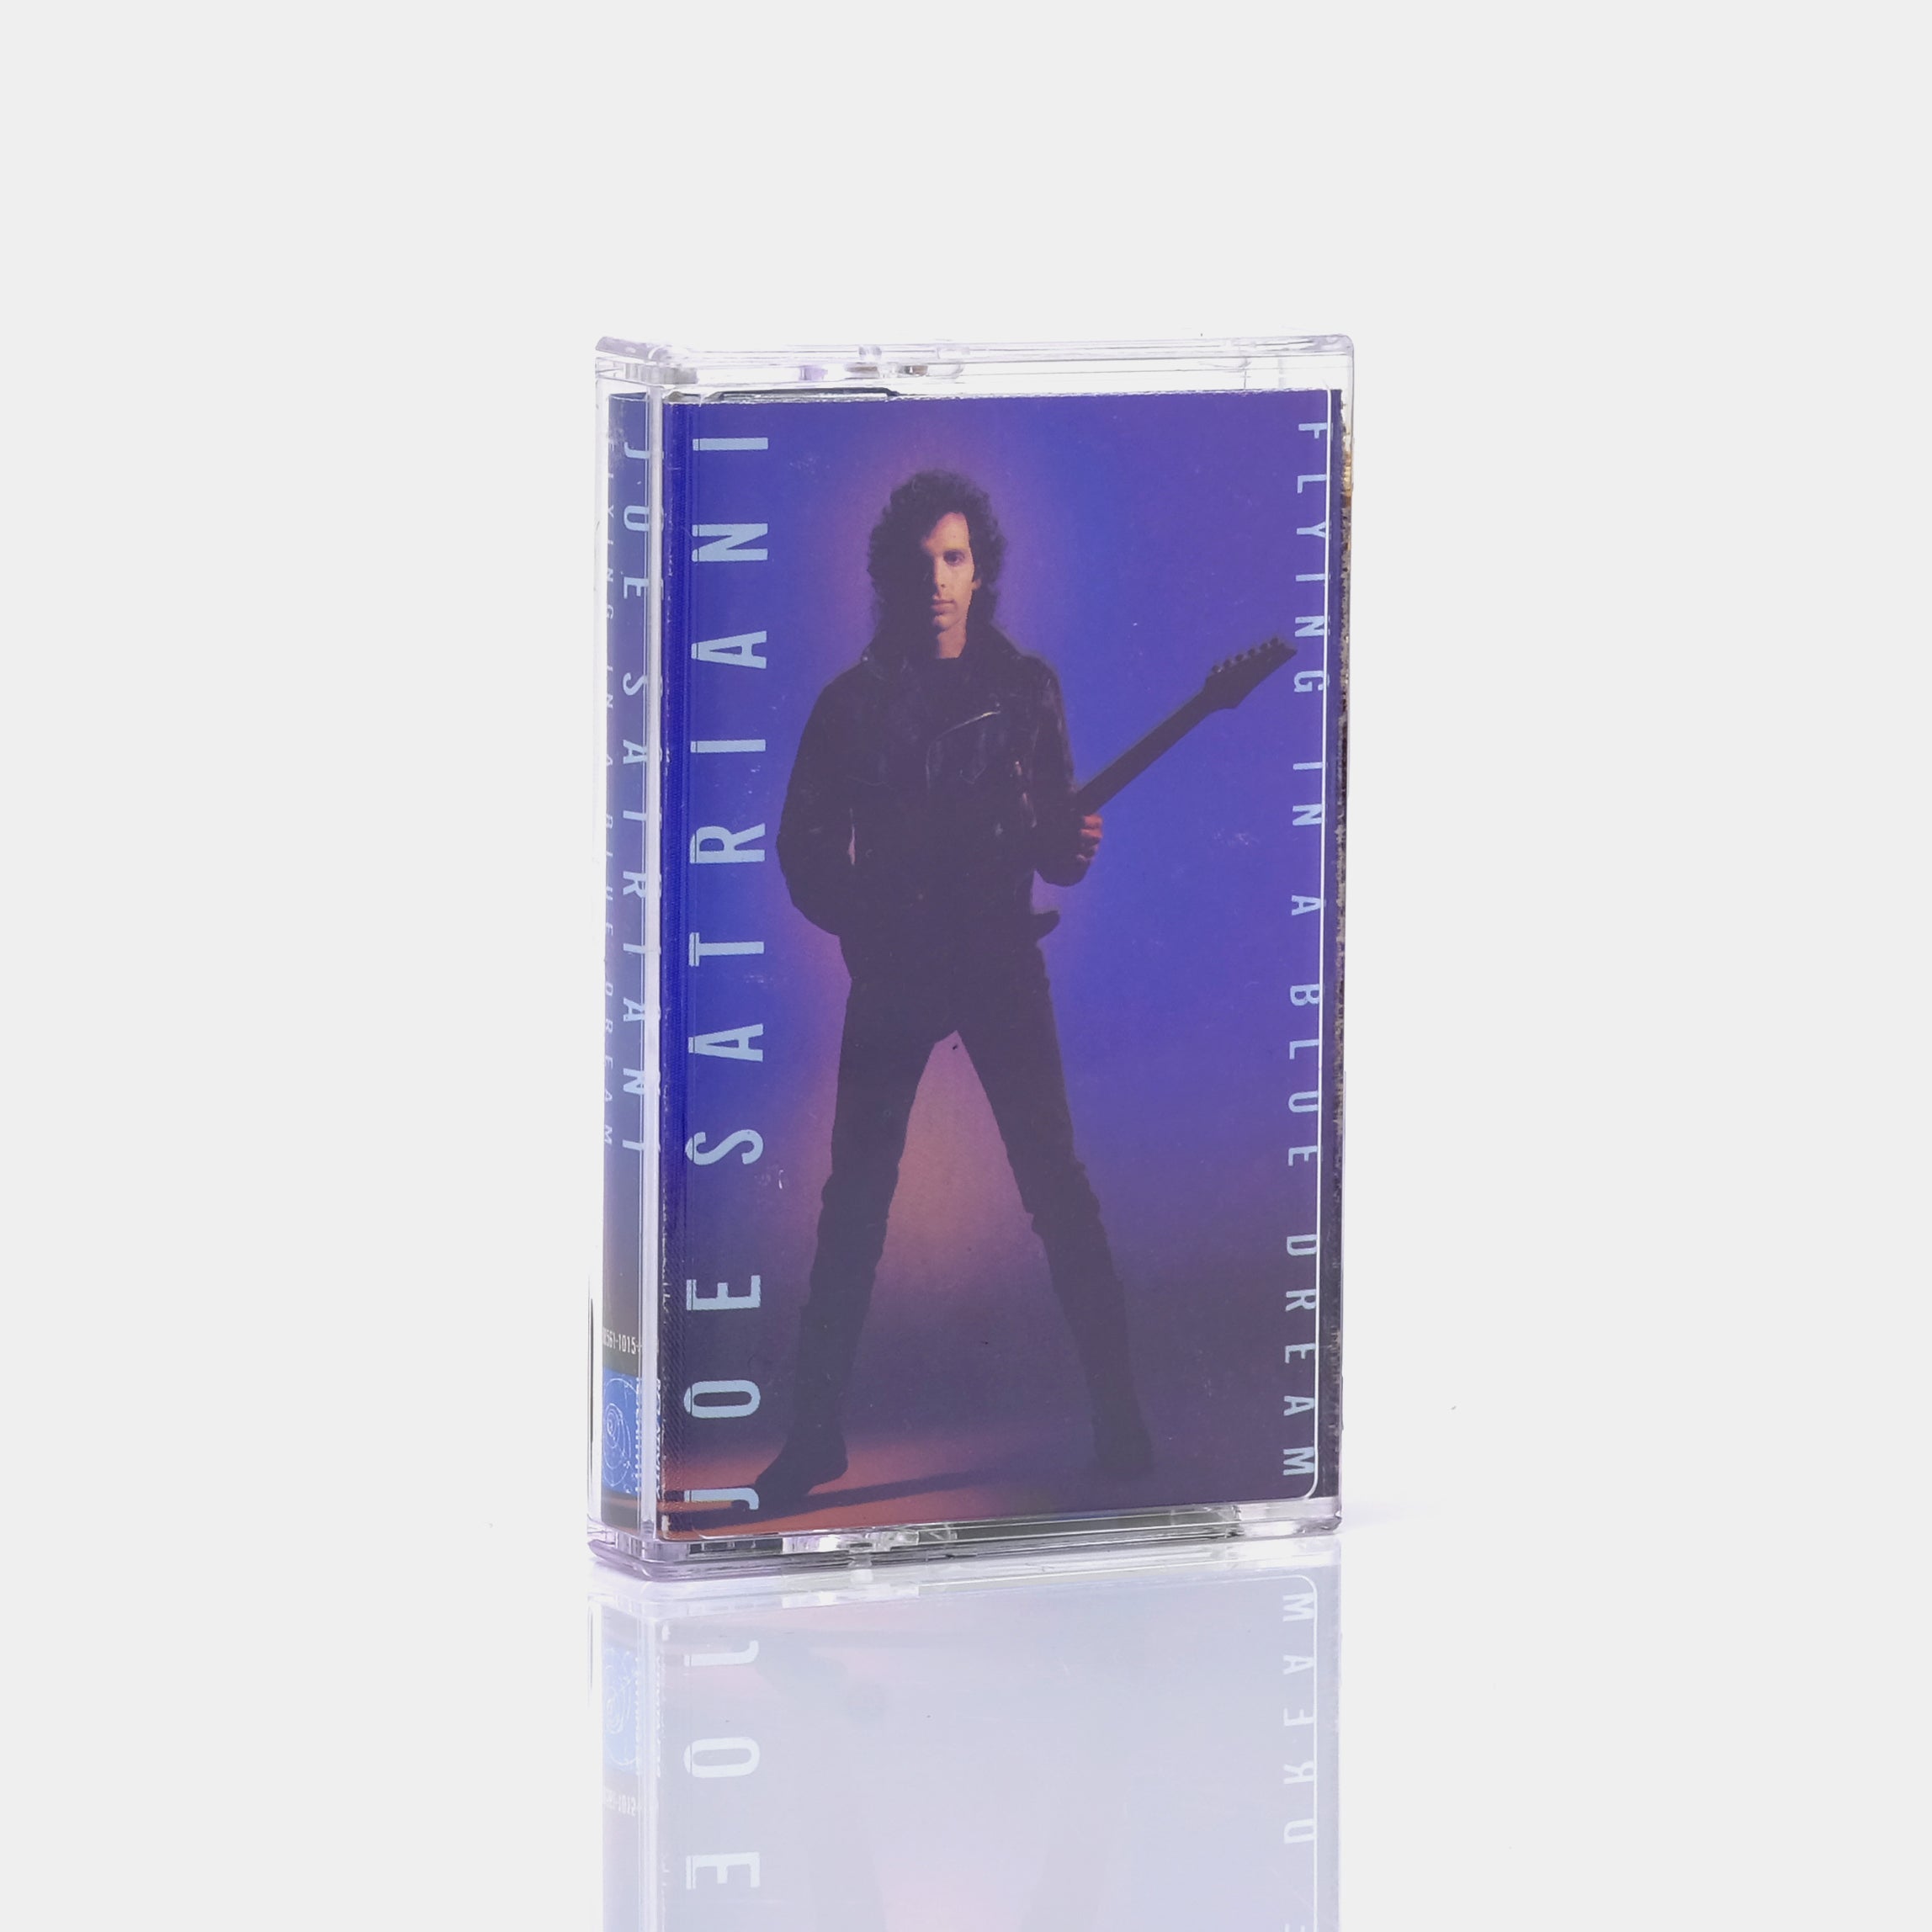 Joe Satriani - Flying In A Blue Dream Cassette Tape